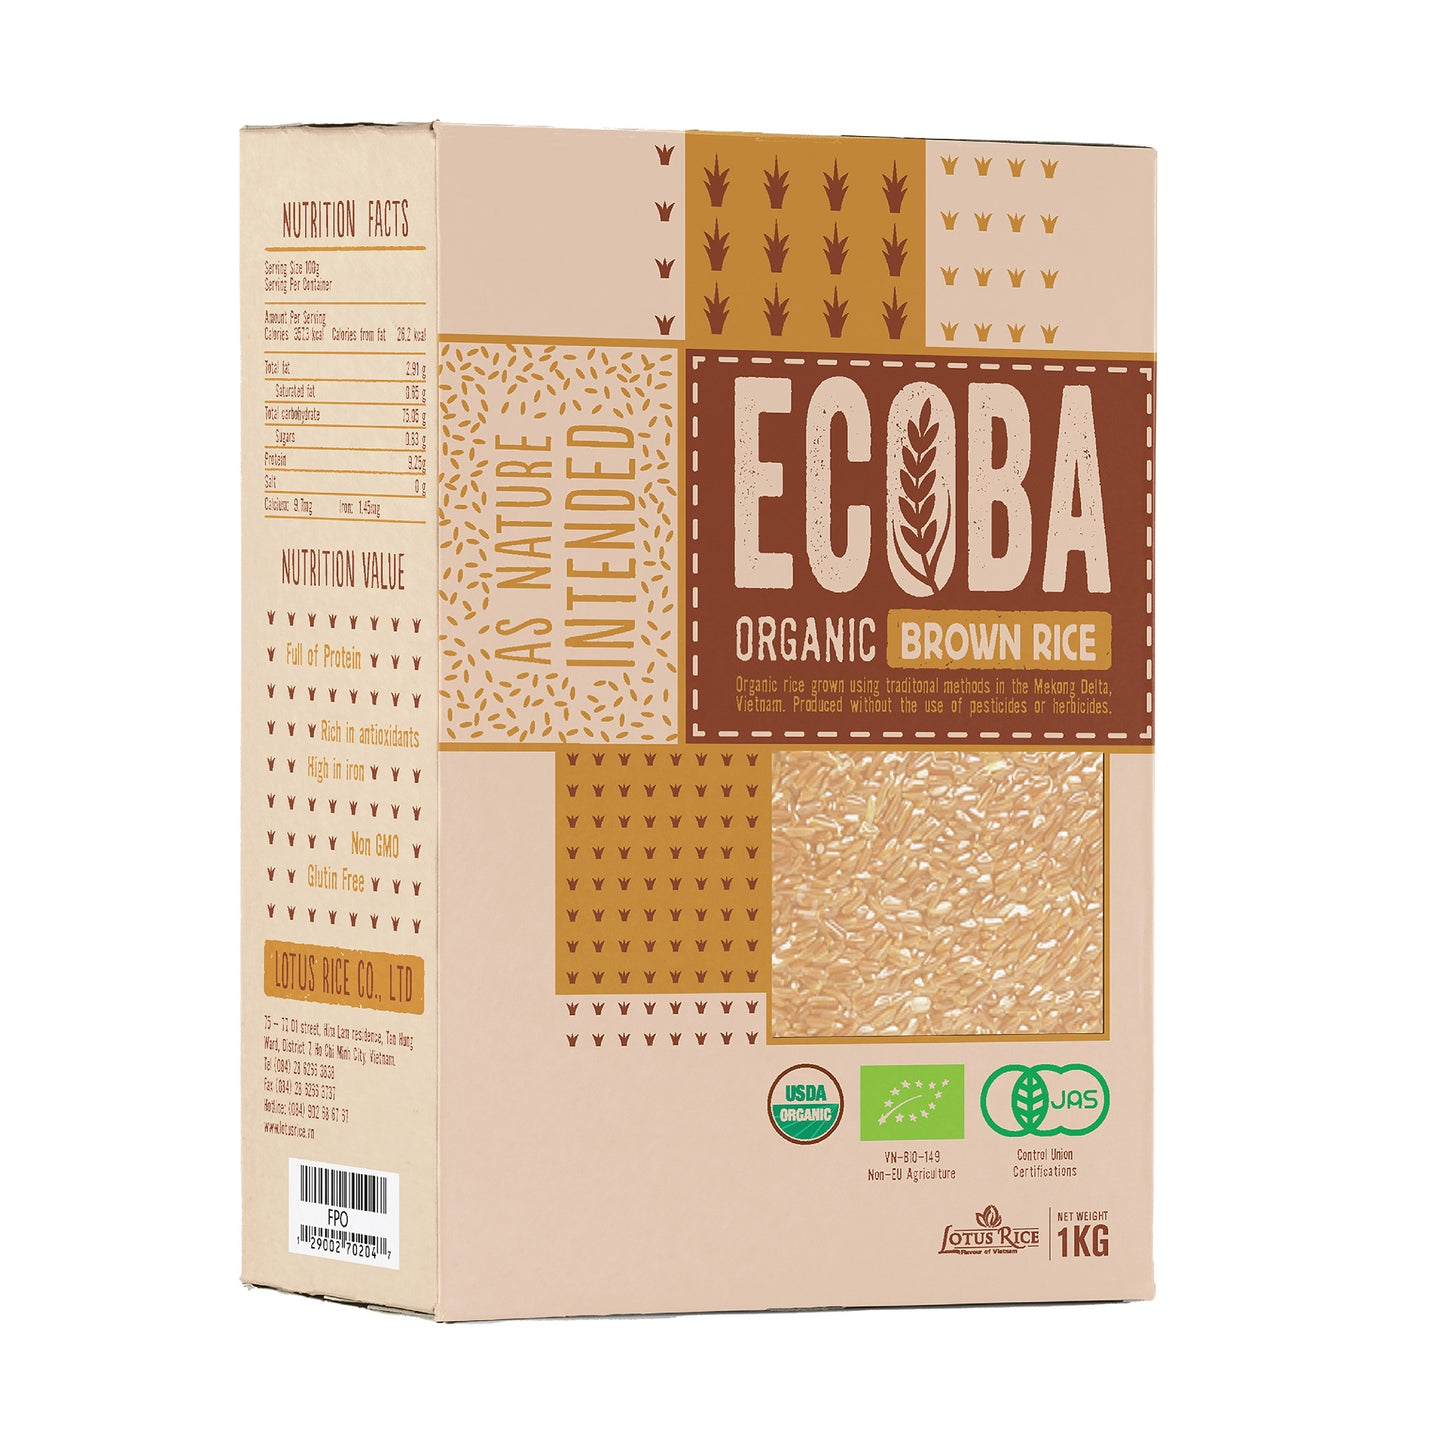 有机糙米ECOBA (1kg*20)